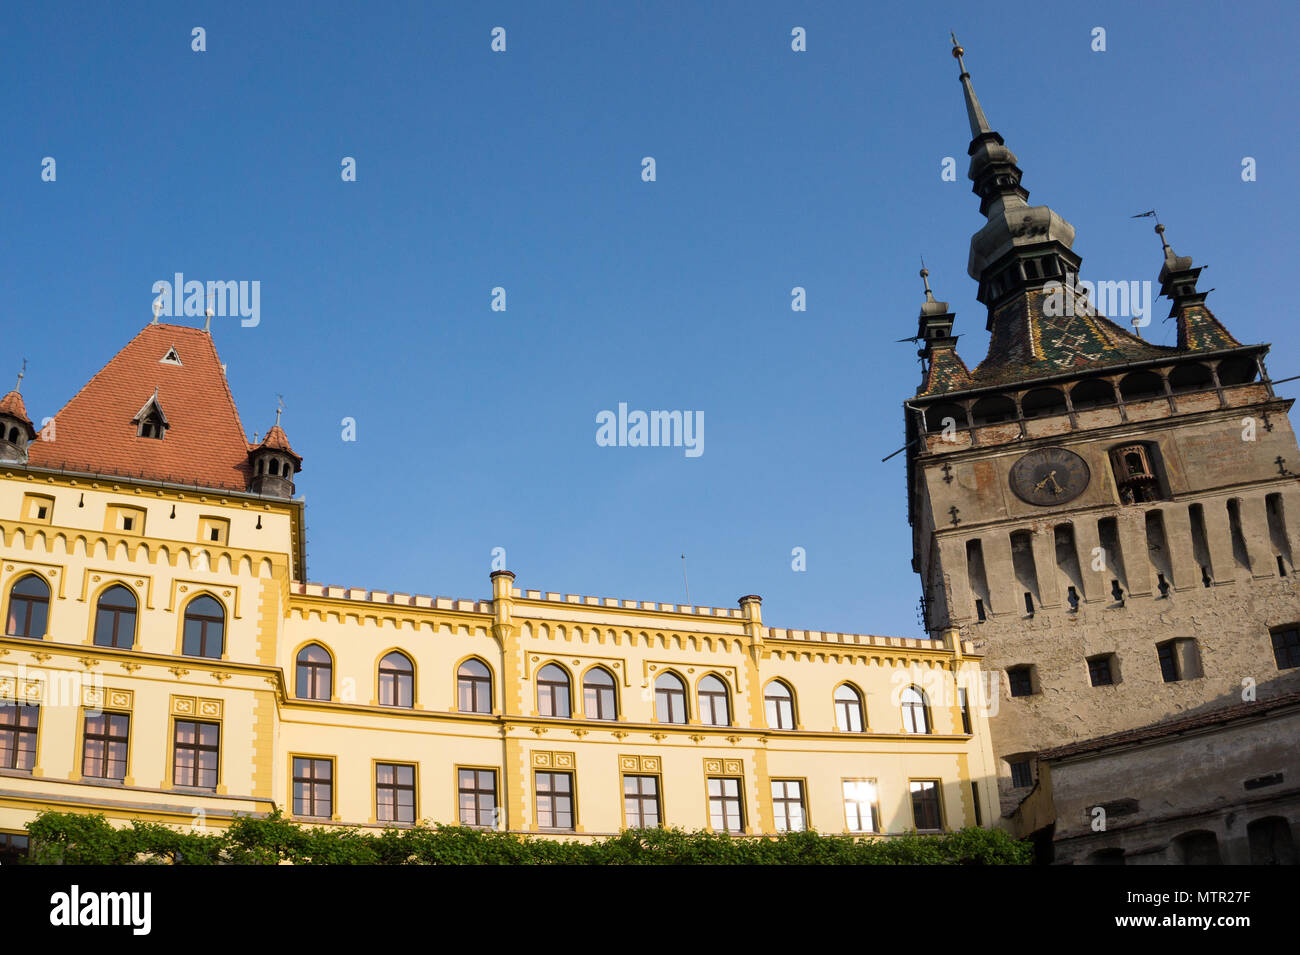 Scène de rue avec tour de l'horloge historique Transivania Roumanie Sighisoara. Banque D'Images